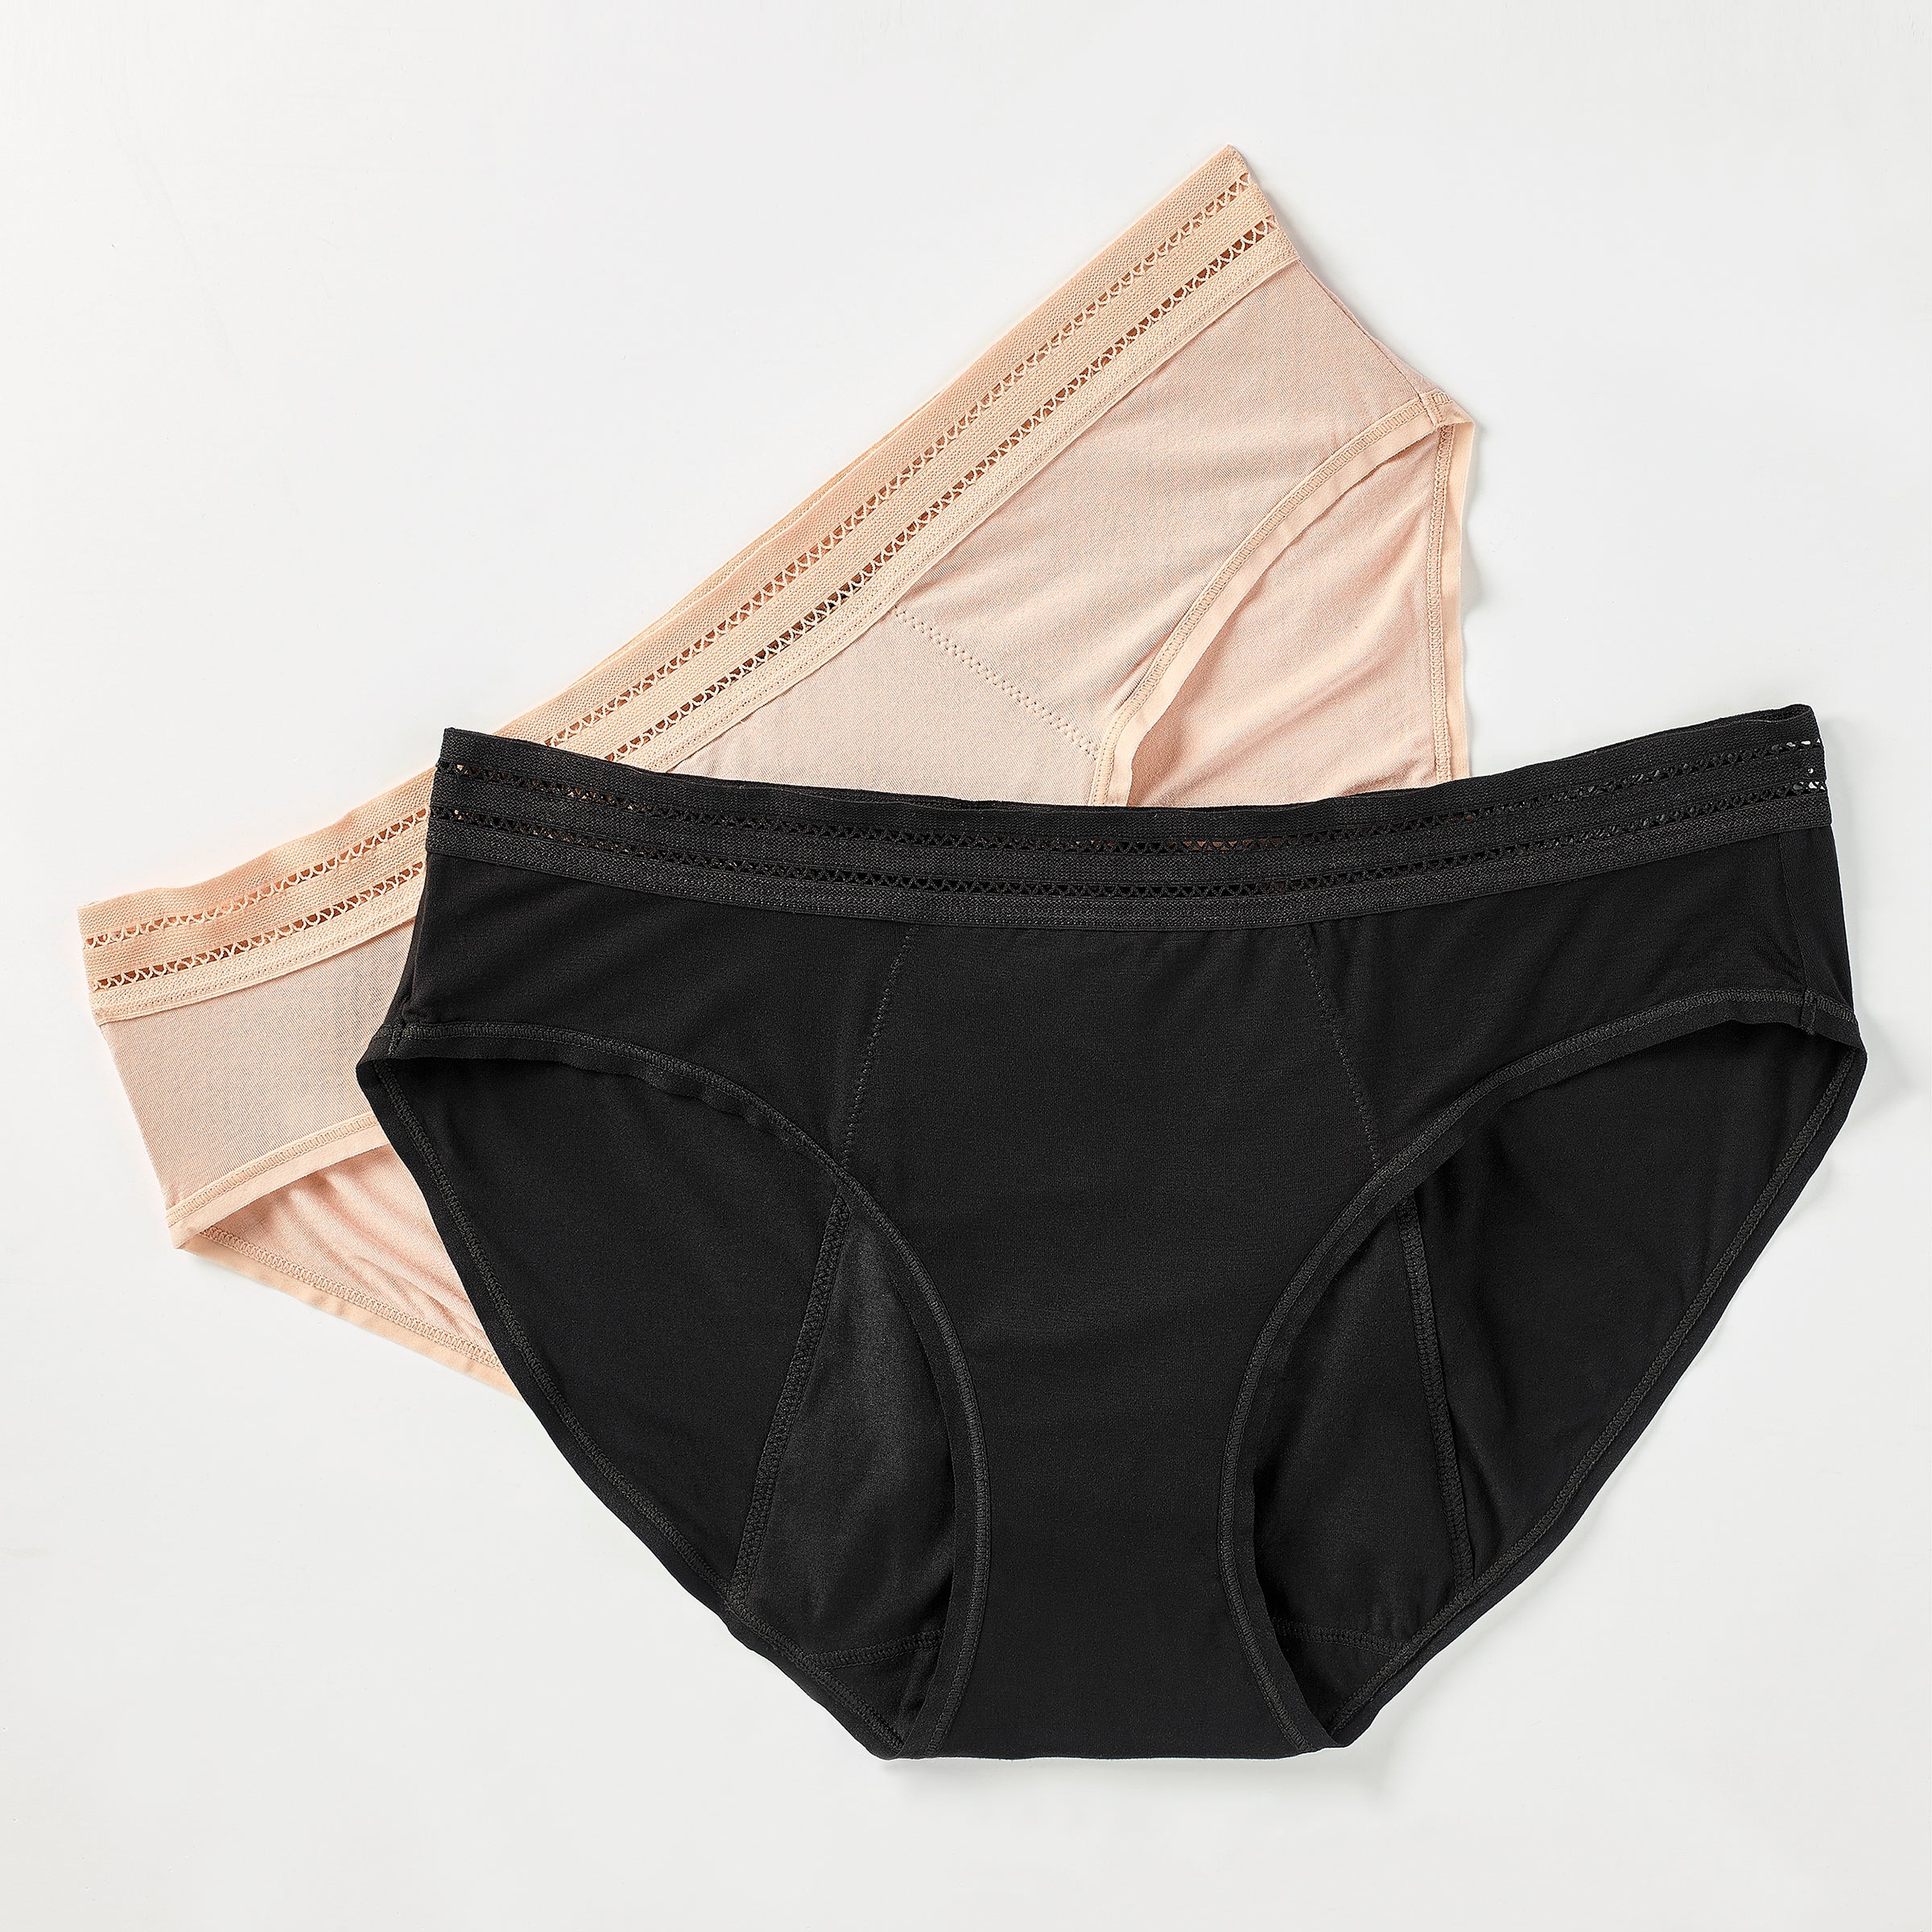 Surprise Period Underwear Incontinence Knickers Zero Waste Cotton